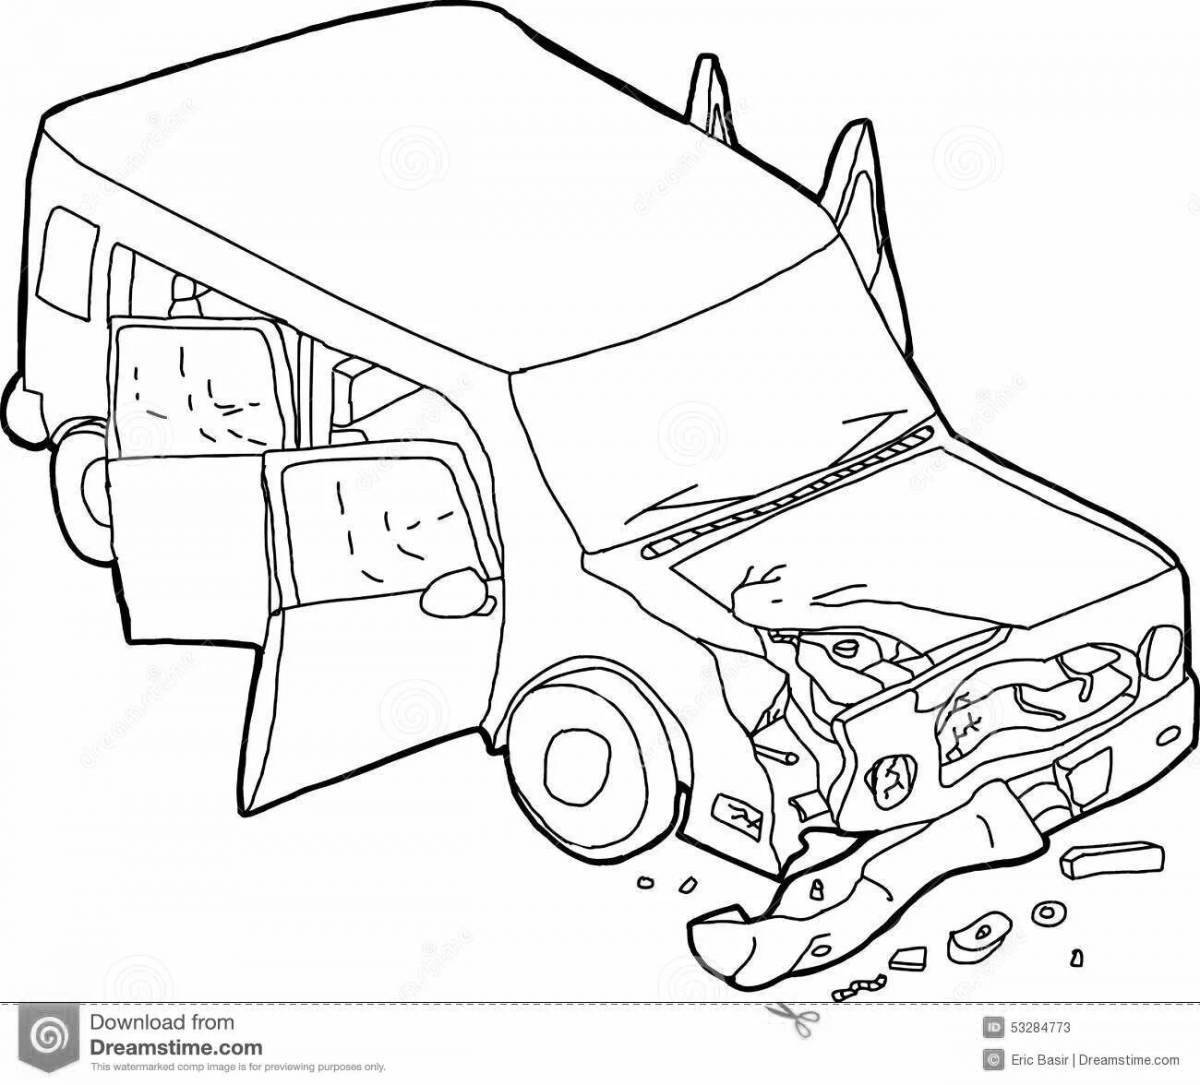 Привлекательная страница раскраски сломанной машины